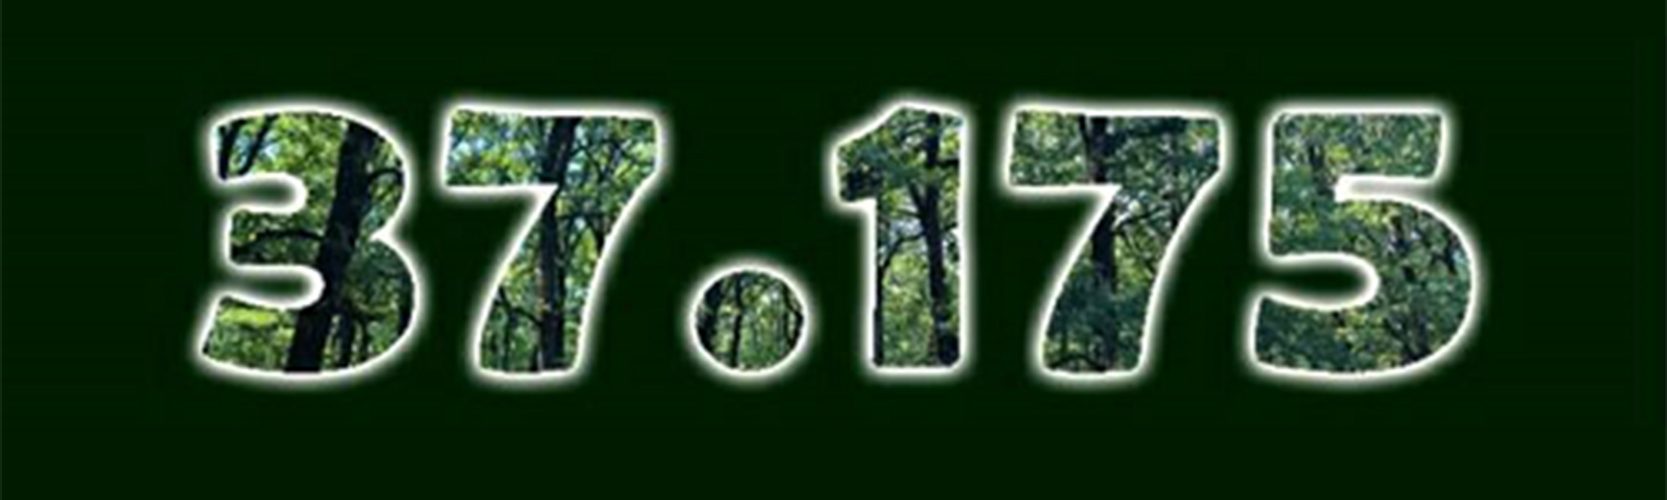 37.175 δέντρα για τη Σαλαμίνα. Ένα δέντρο για κάθε κάτοικο